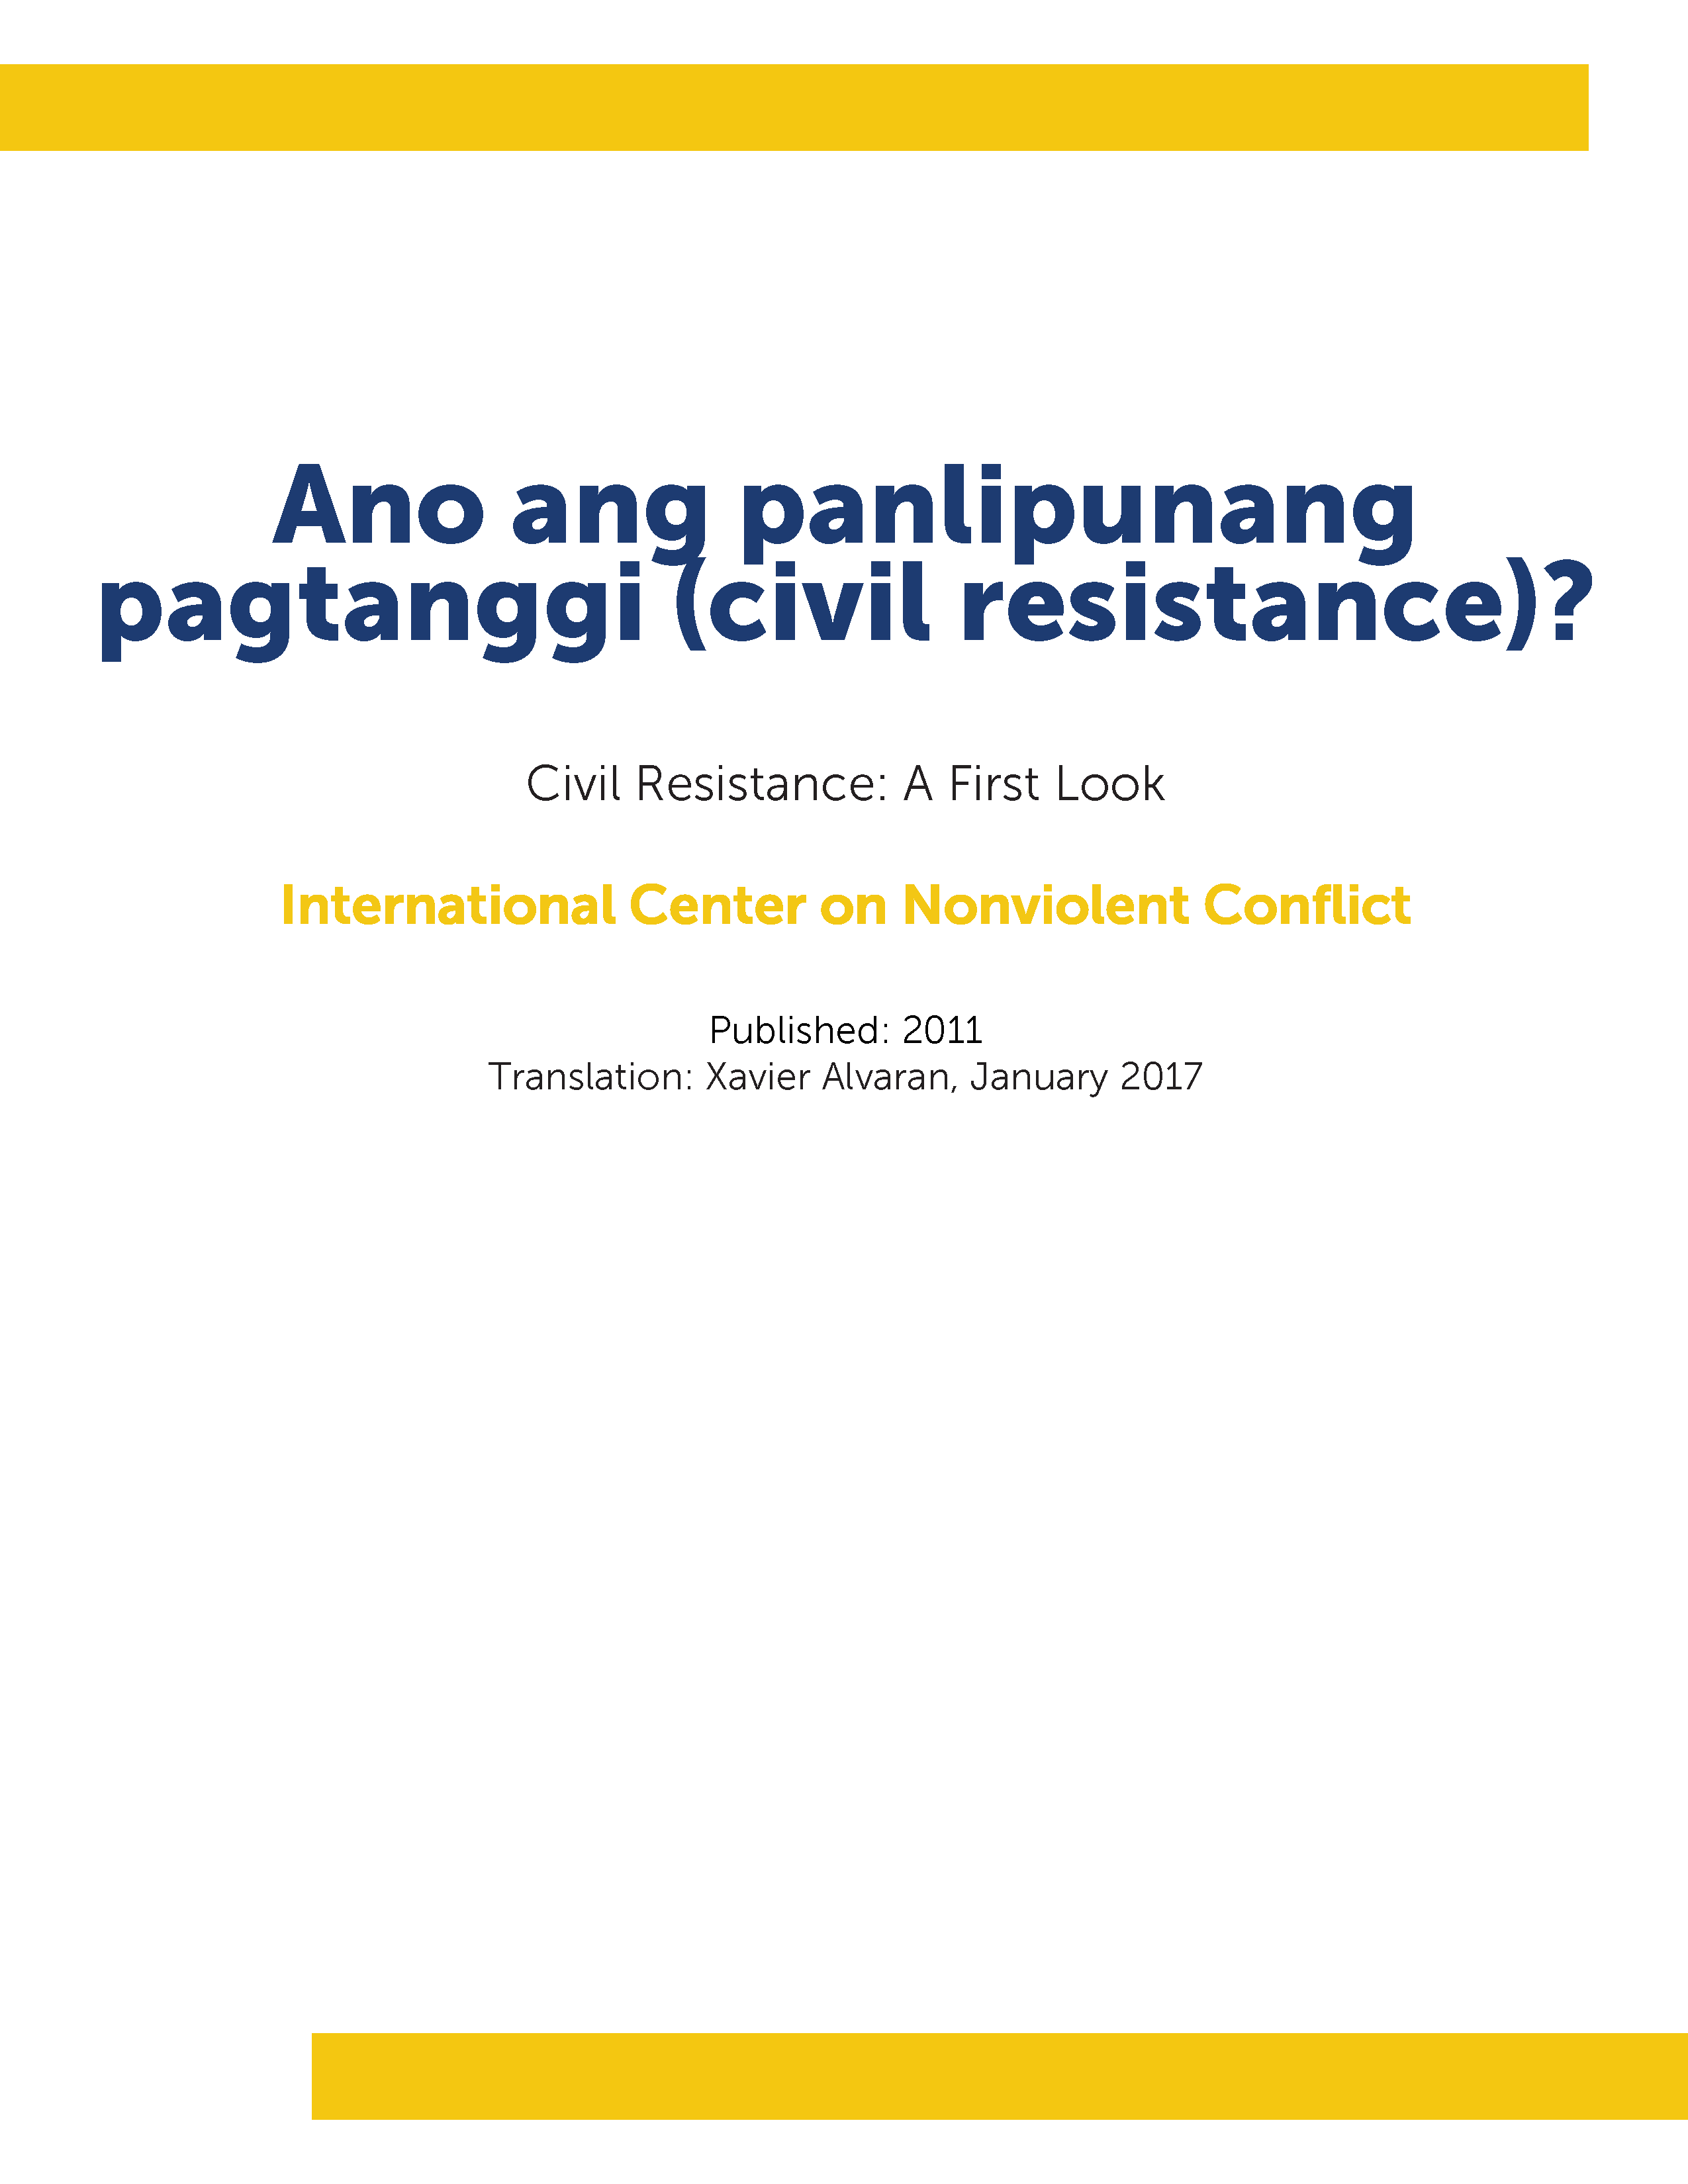 Ano Ang Panlipunang Pagtanggi (Civil Resistance)